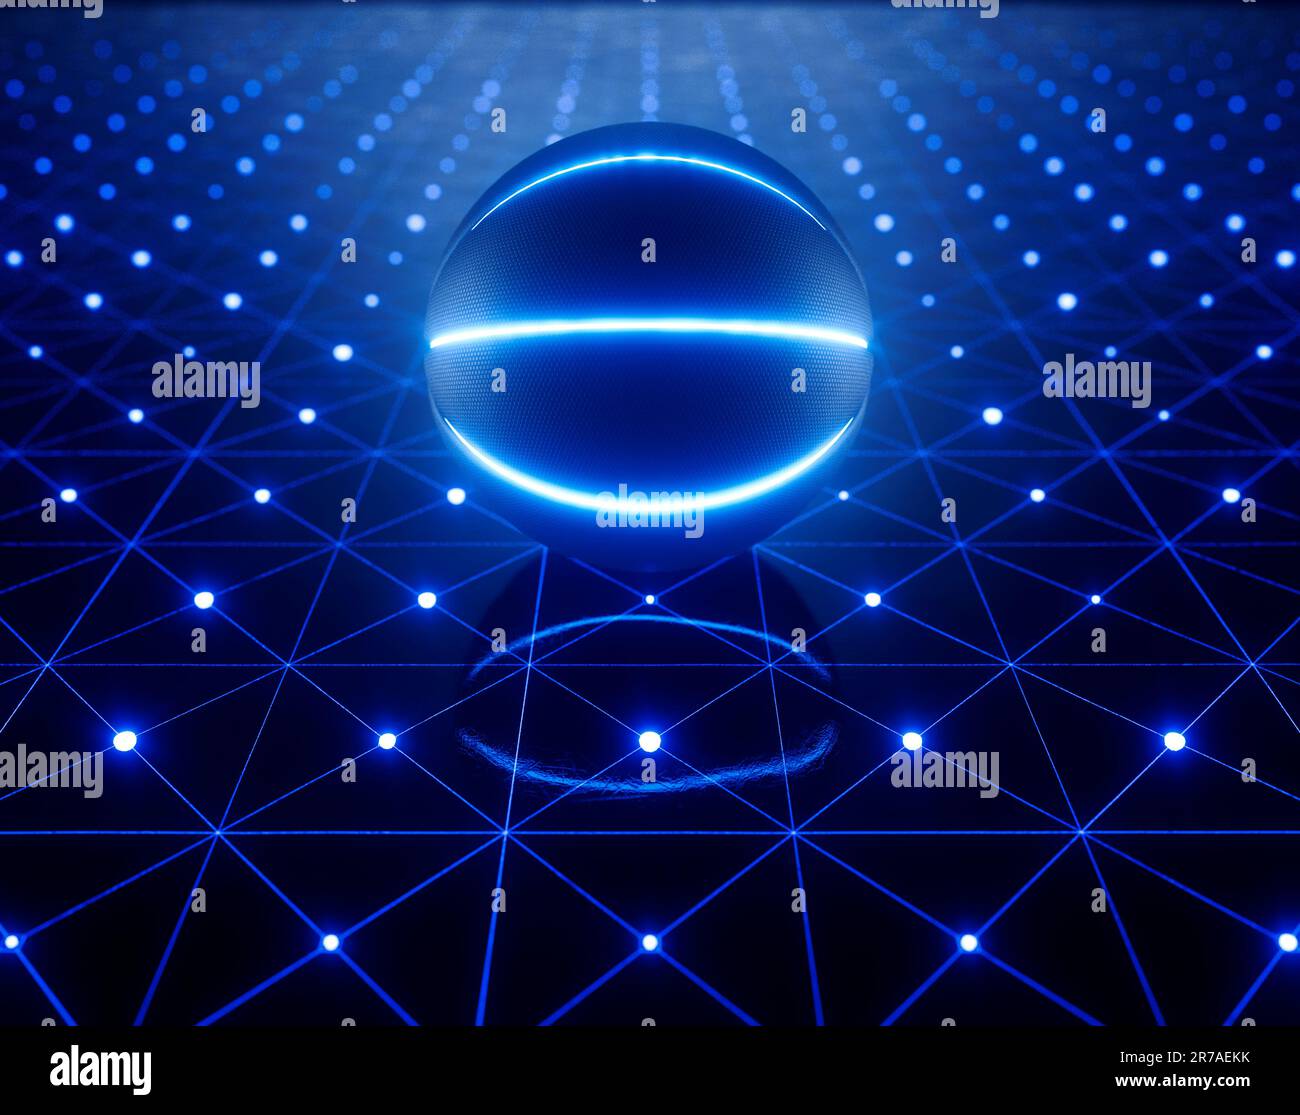 Un concetto sportivo di una futuristica palla da basket illuminata con marcature al neon su un palco di vetro con marcature al neon - rendering 3D Foto Stock